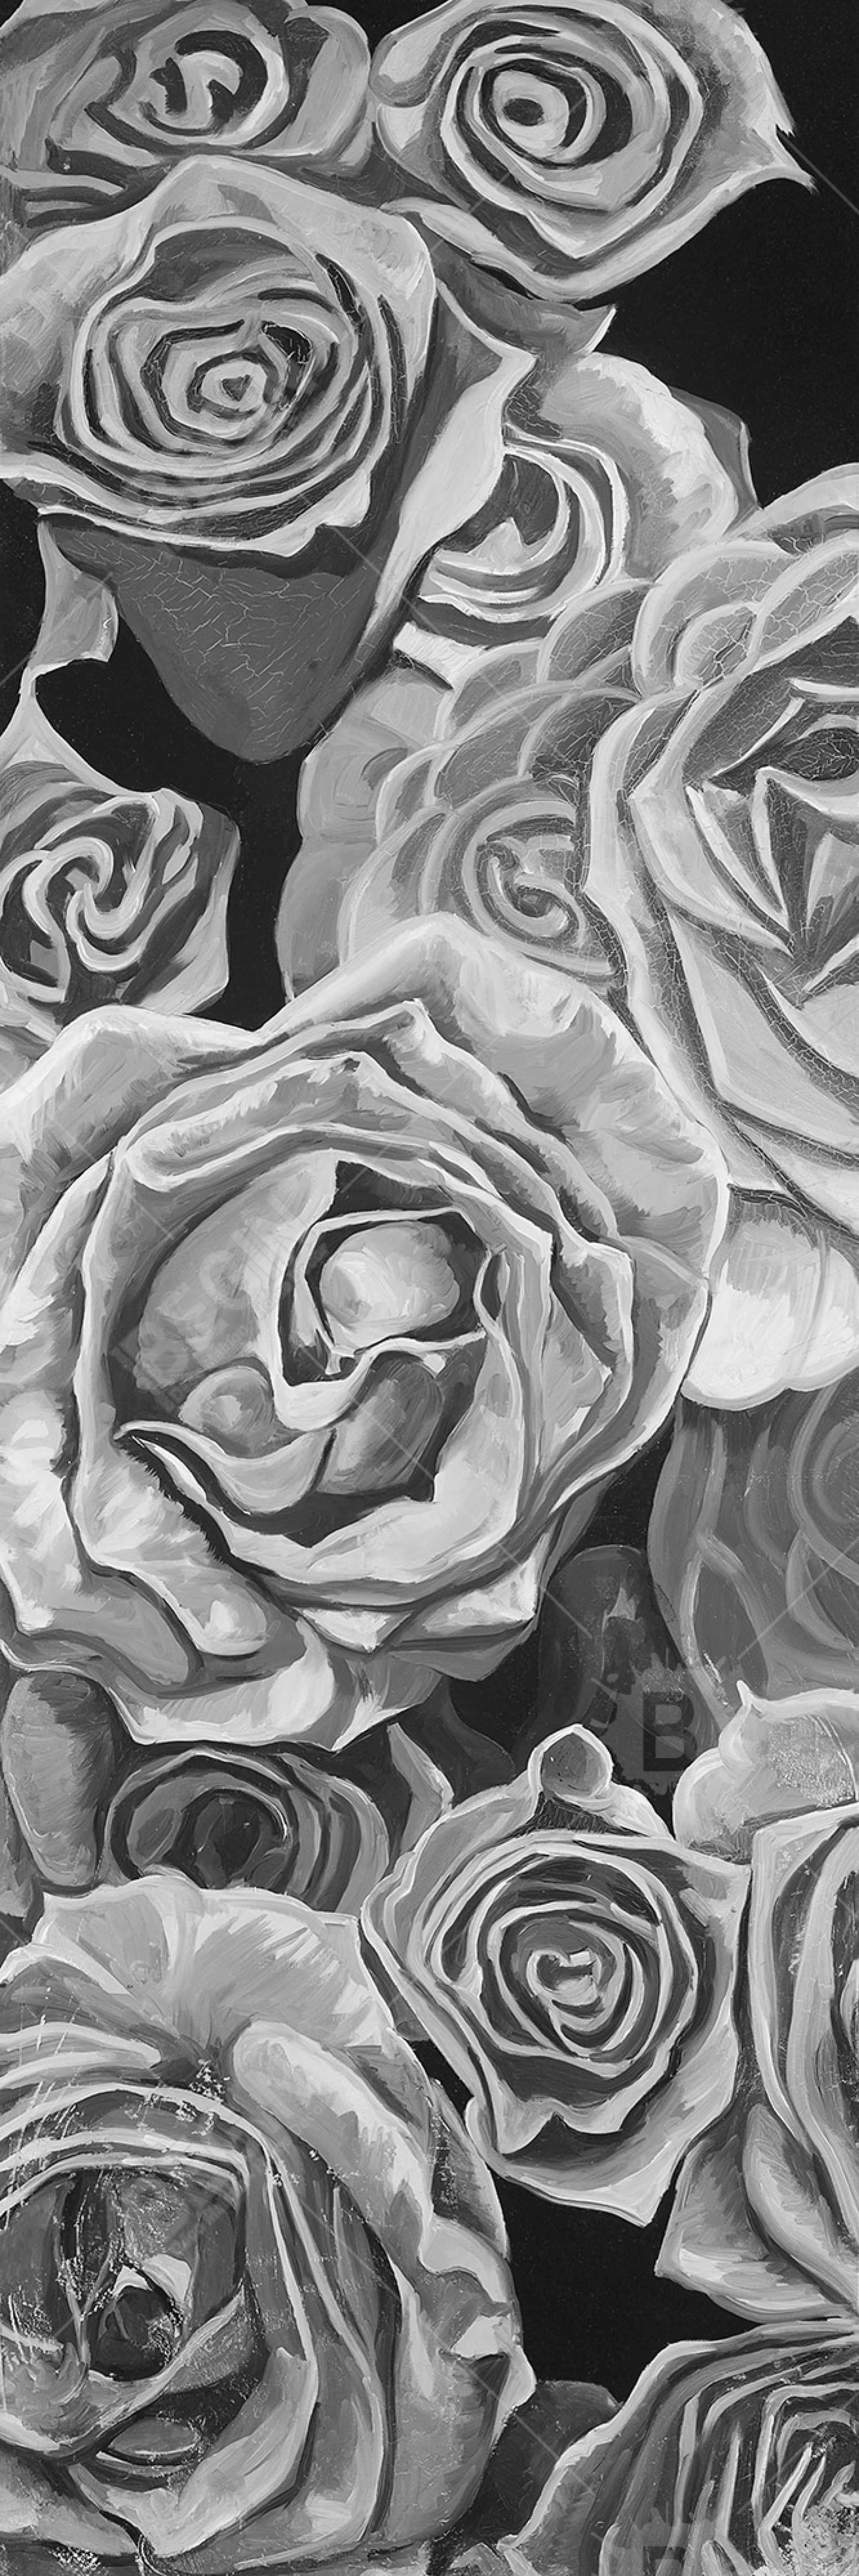 Roses en tons de gris